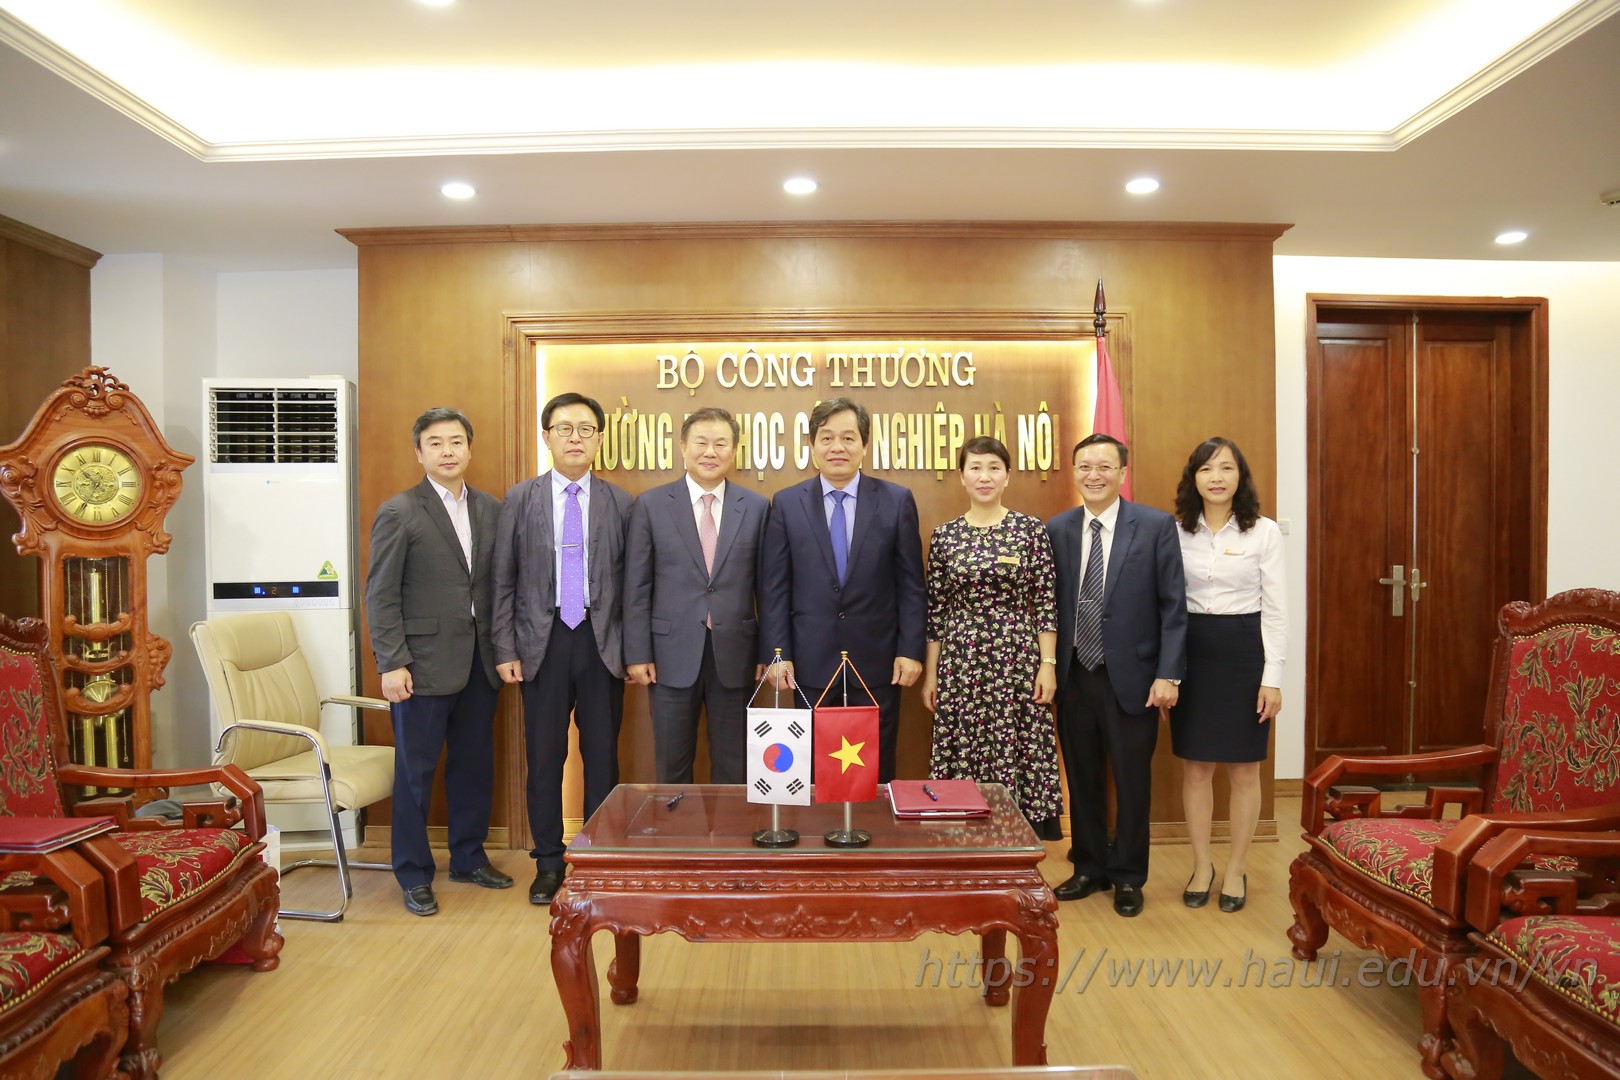 Trường Đại học Công nghiệp Hà Nội ký kết thỏa thuận hợp tác đào tạo với Trường Cao đẳng Kunjang, Hàn Quốc